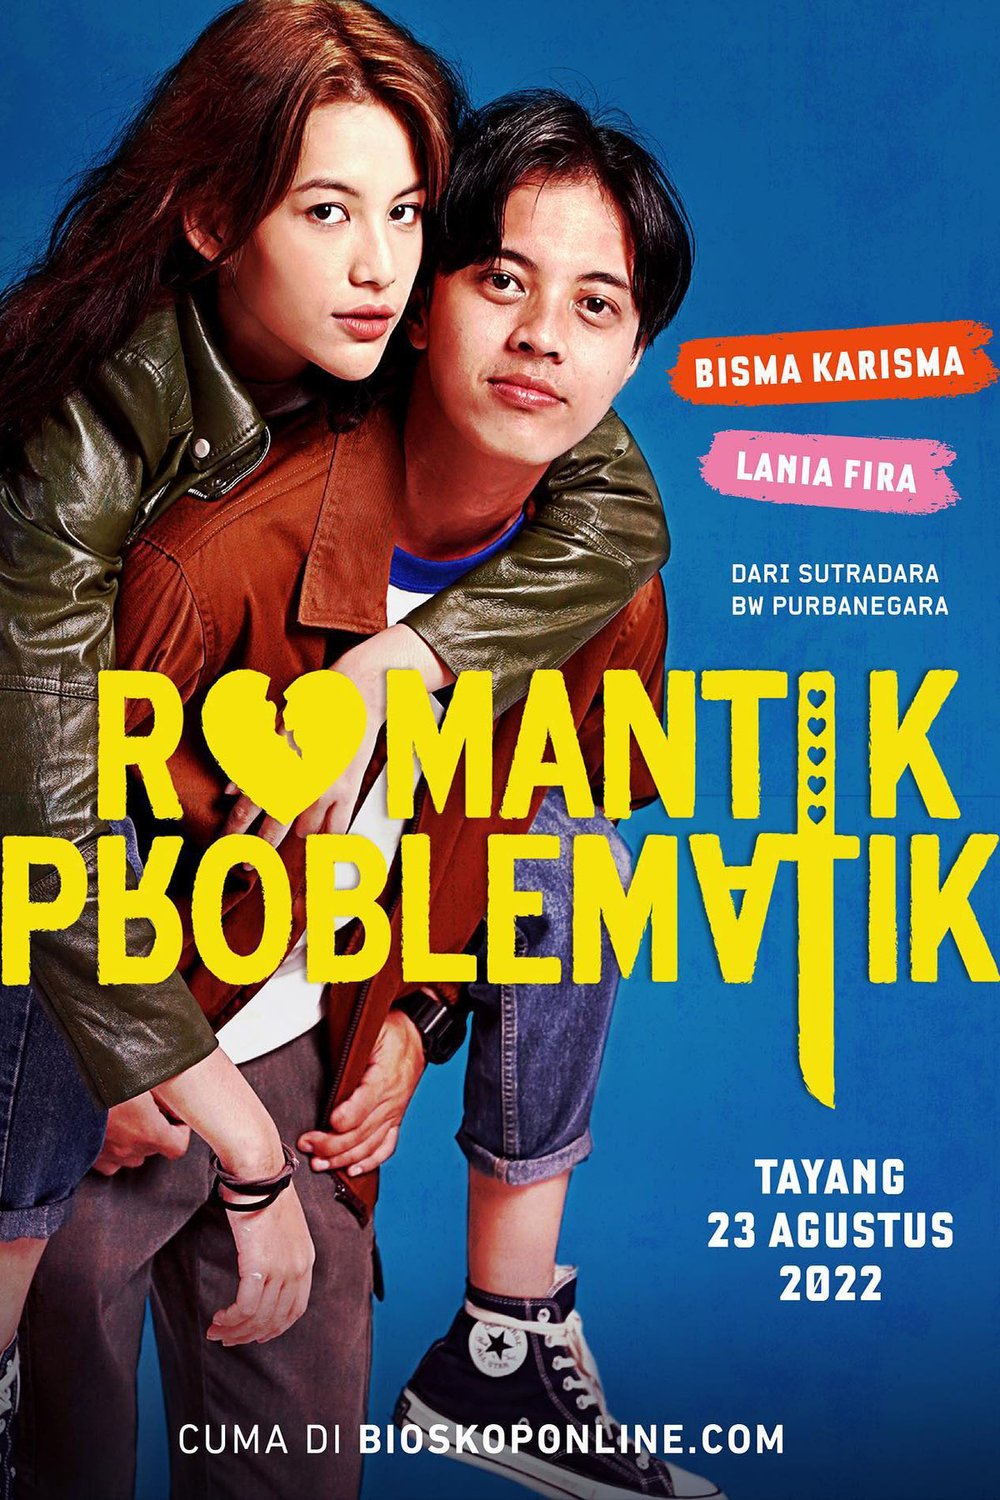 L'affiche originale du film Romantic Problematic en Indonésien